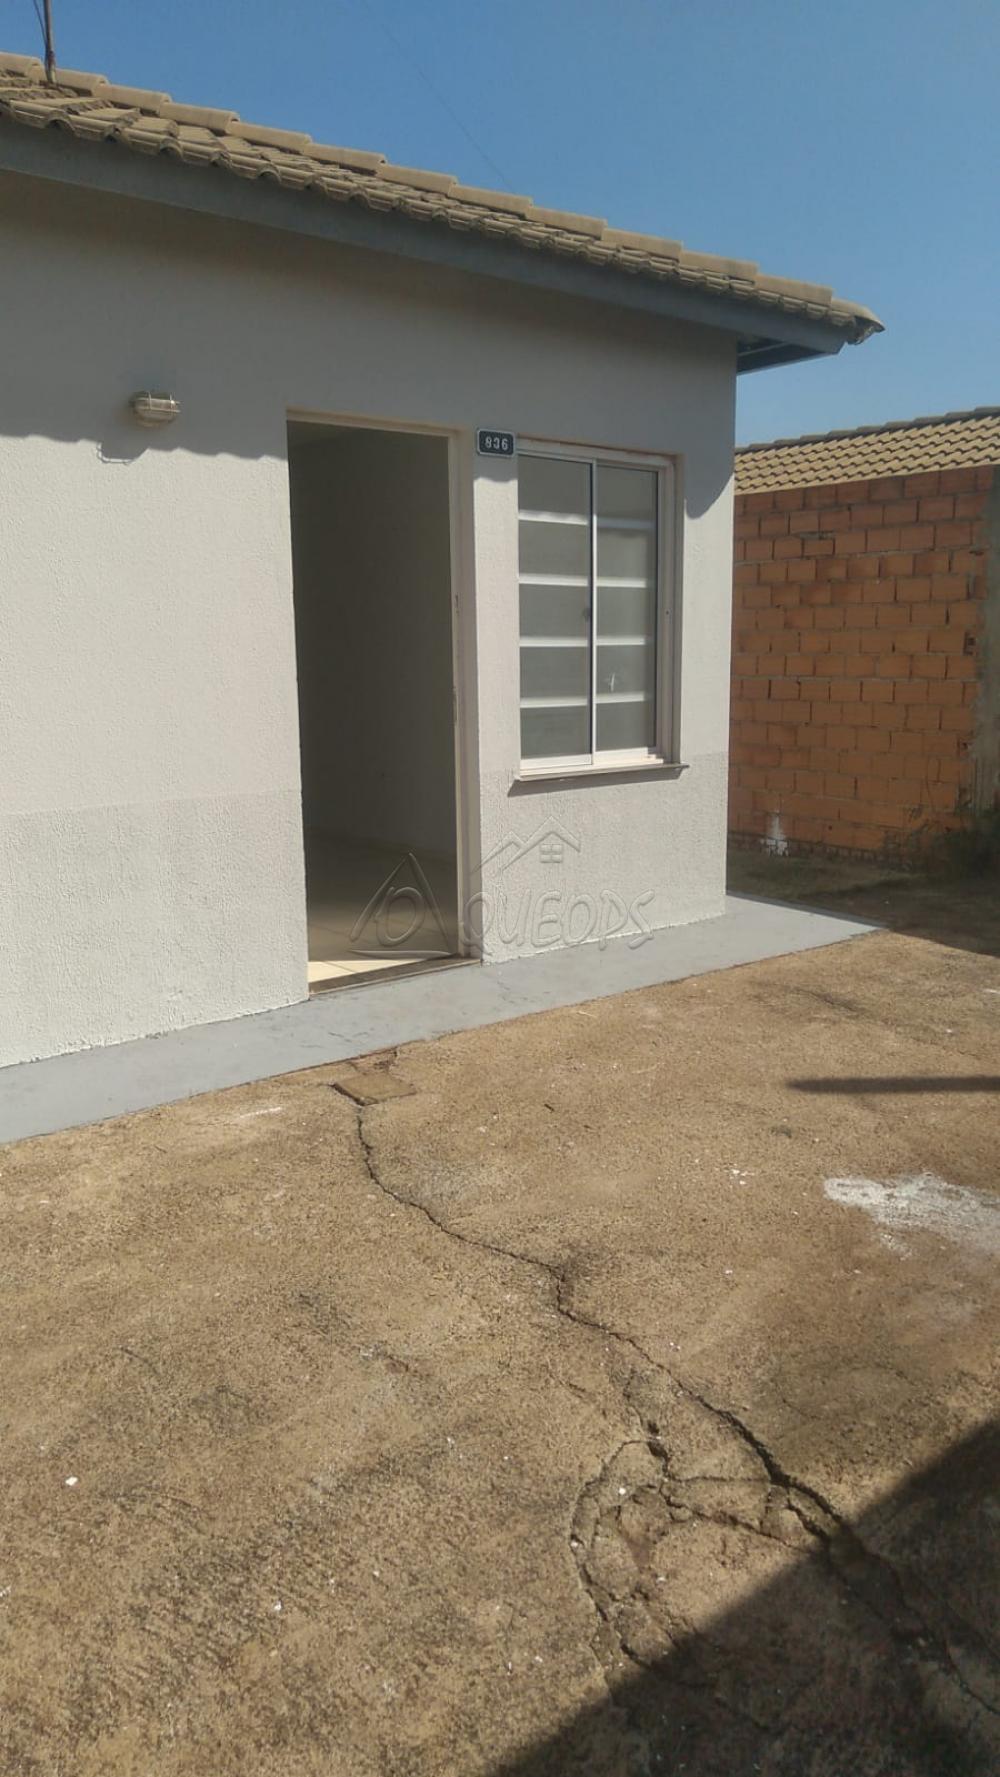 Comprar Casa / Padrão em Barretos R$ 180.000,00 - Foto 3